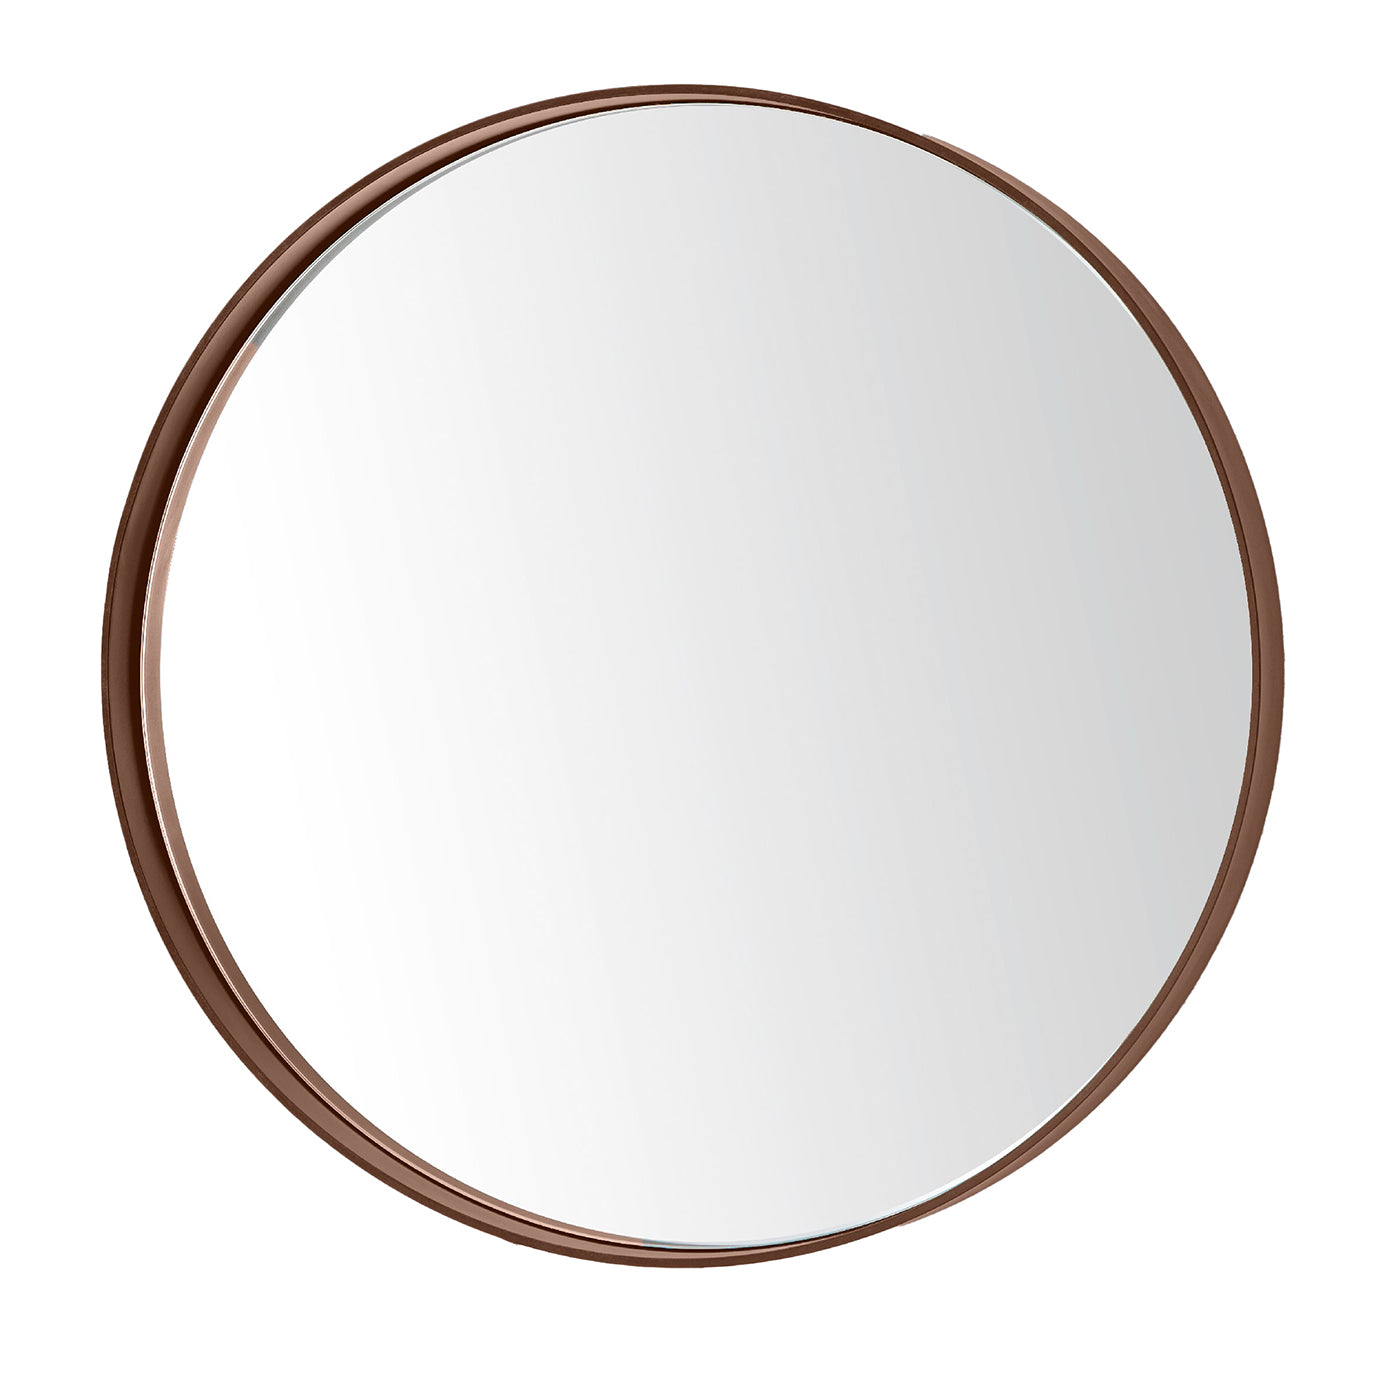 Dorian Gray Round Rusty Iron Mirror - Main view